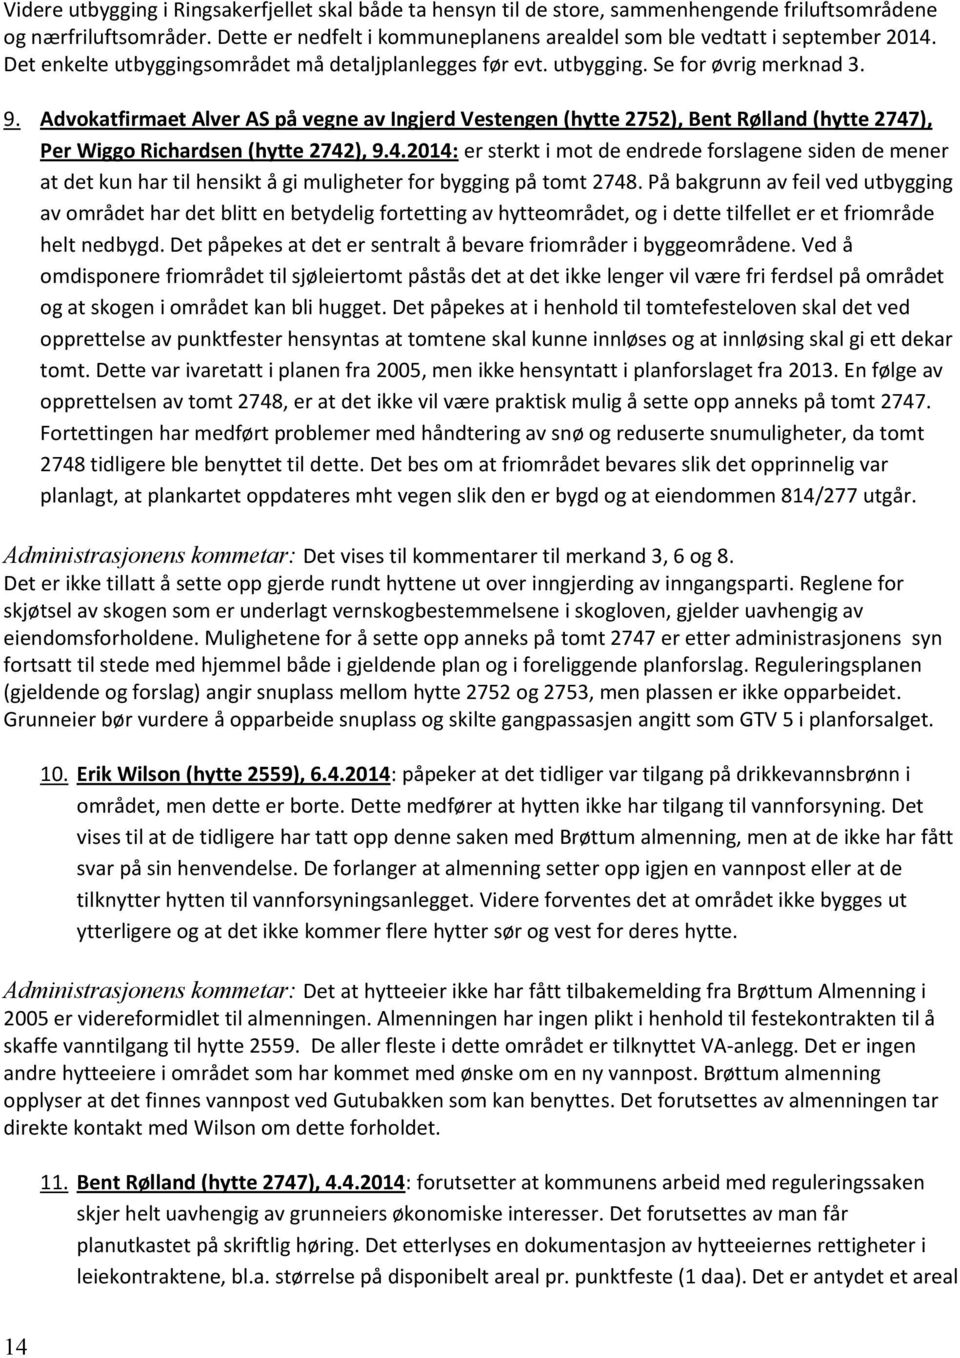 Advokatfirmaet Alver AS på vegne av Ingjerd Vestengen (hytte 2752), Bent Rølland (hytte 2747